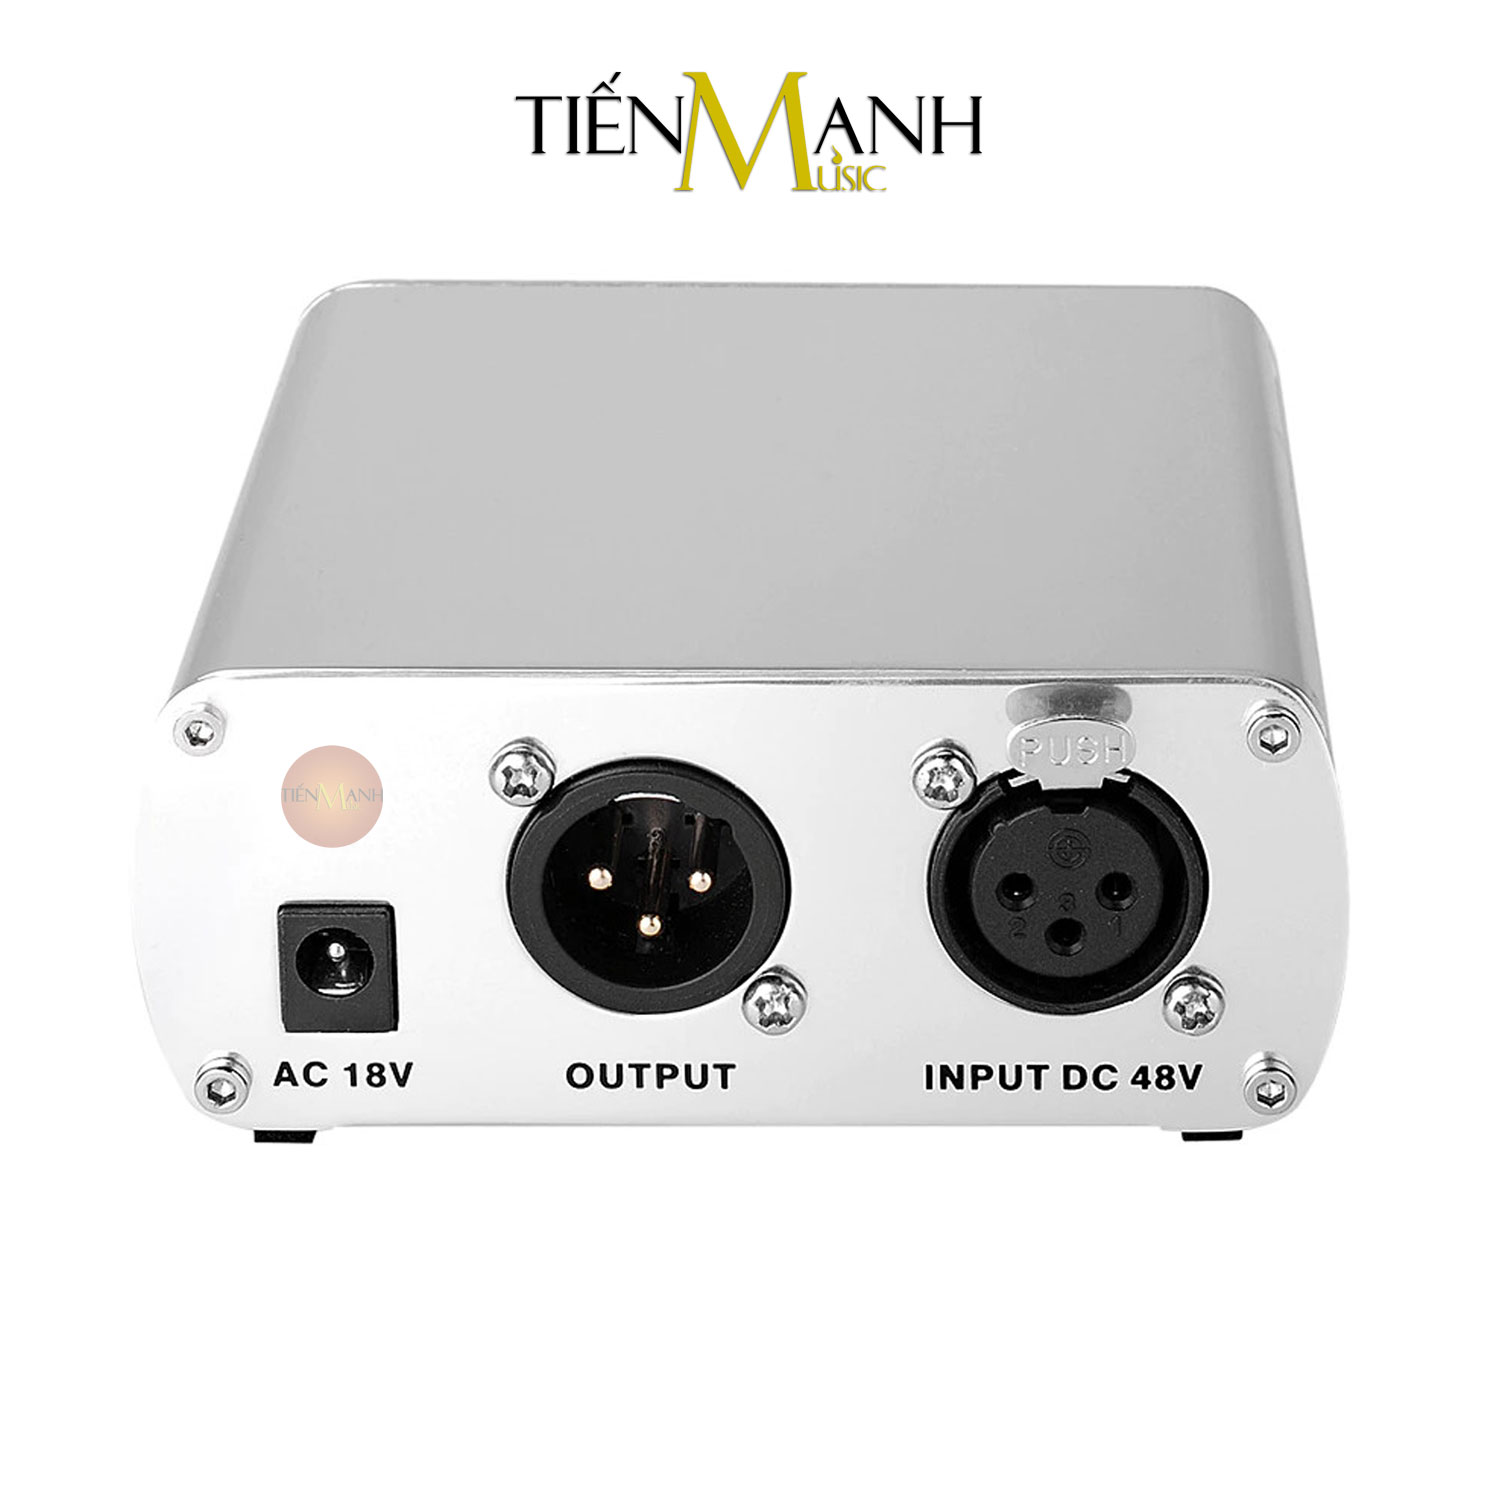 Takstar PM-5 - Nguồn Phantom 48V Cho Micro Condenser Phòng Thu Studio PM5 Mic Microphone Hàng Chính Hãng - Kèm Móng Gẩy DreamMaker